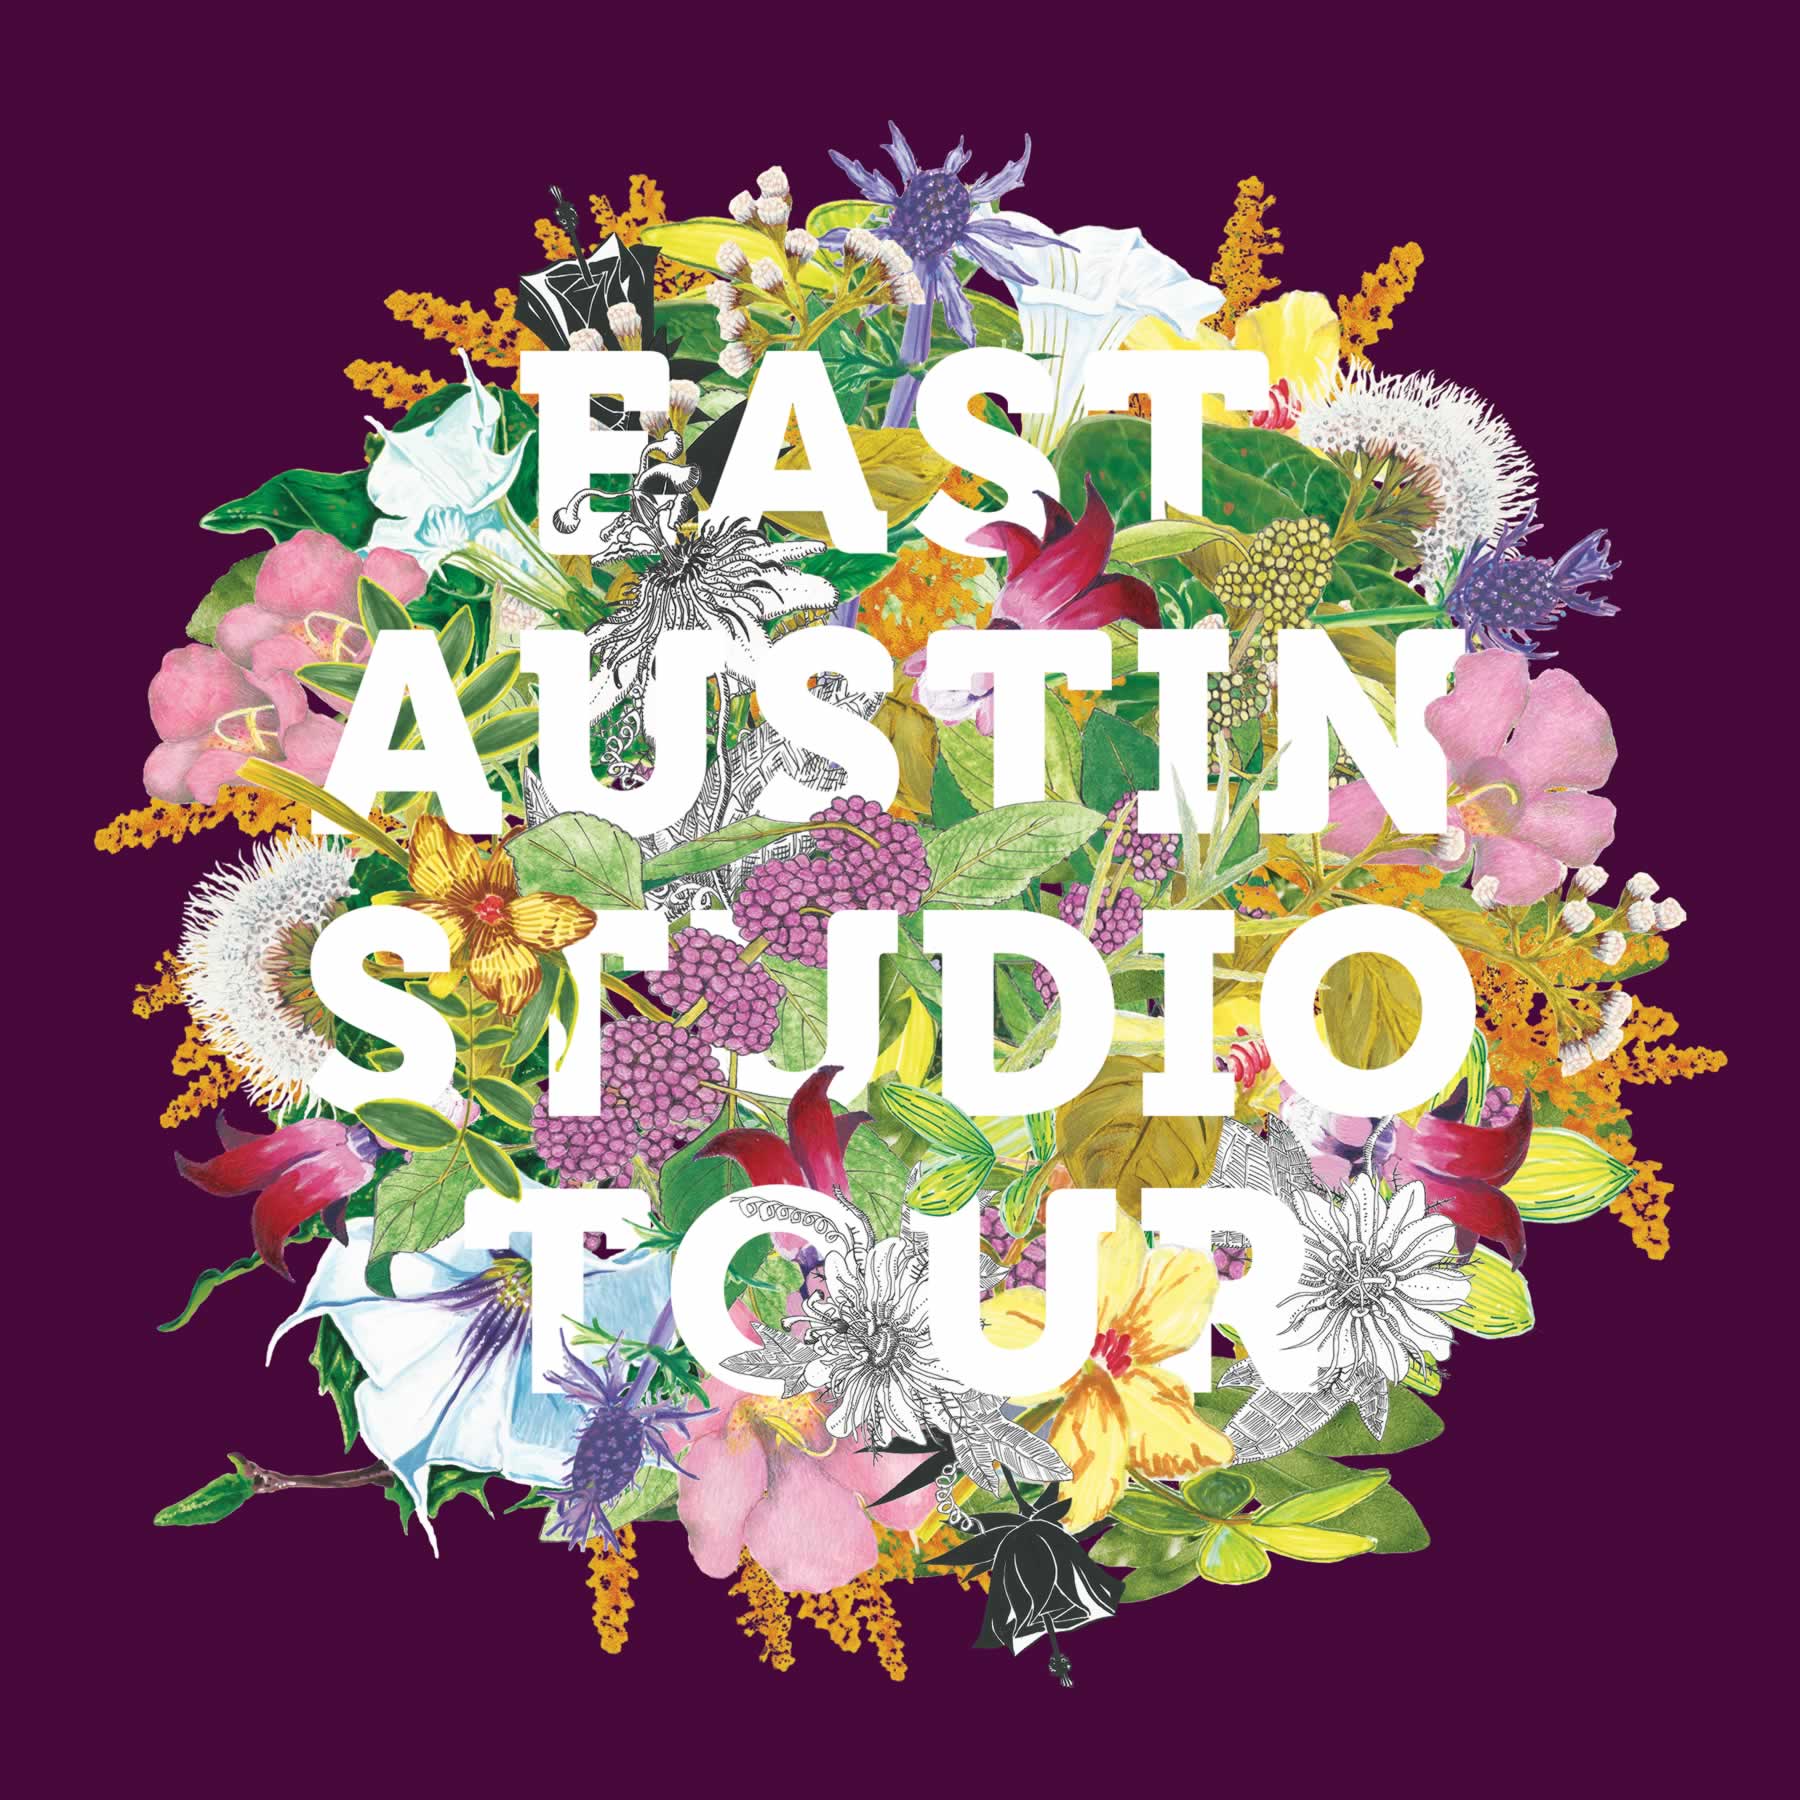 East Austin Studio Tour Events Events & Promotions The Austin